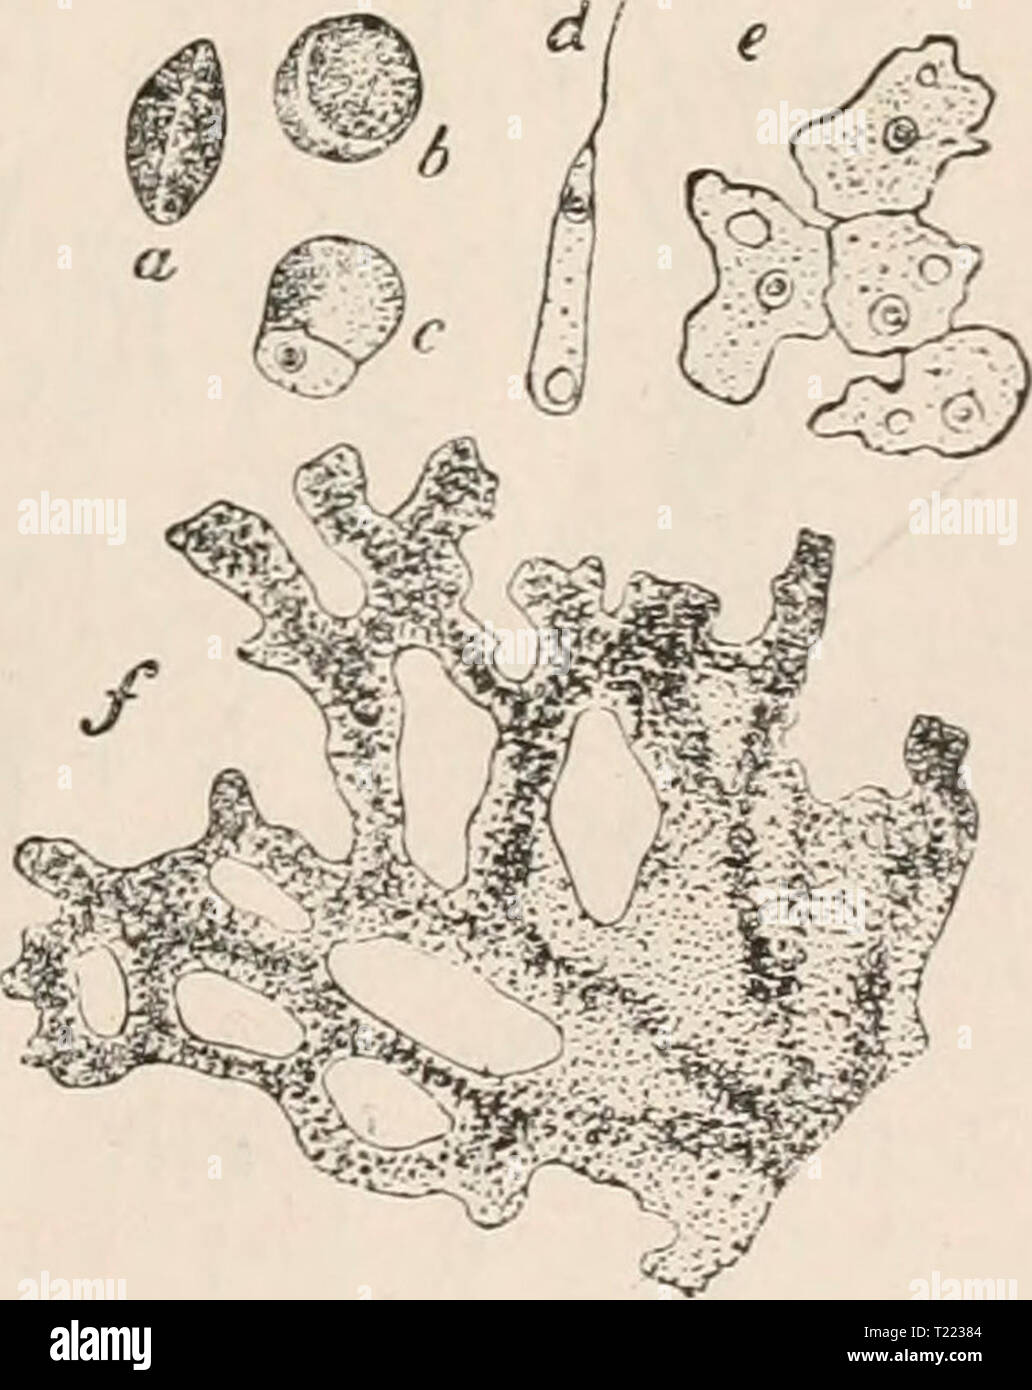 Archive image from page 42 of Die Zelle und die Gewebe Die Zelle und die Gewebe. Grundzüge der Allgemeinen Anatomie und Physiologie  diezelleunddiege02hert Year: 1893-1898  Fig. 7. Fig. 8. Fig. 7. Ainöba proteus. Nach Leidy. Aus R. Hertwig Fig. 16. n. Kern. cv. Coutractile Yacuole. N. Nahrungsballen, en. Körnerplasma, eh. Hautplasma. Fig. 8. Ein Leukocyt des Frosches, in dem ein Bakterium einge- schlossen ist und verdaut wird. Das Bakterium durch Vesuvin gefärbt. Die beiden Figuren repräsentiren 2 Stadien der Bewegung ein- und derselben Zelle. Nach Metschnikoff Fig. 54. Unter sehr abweichender Stock Photo